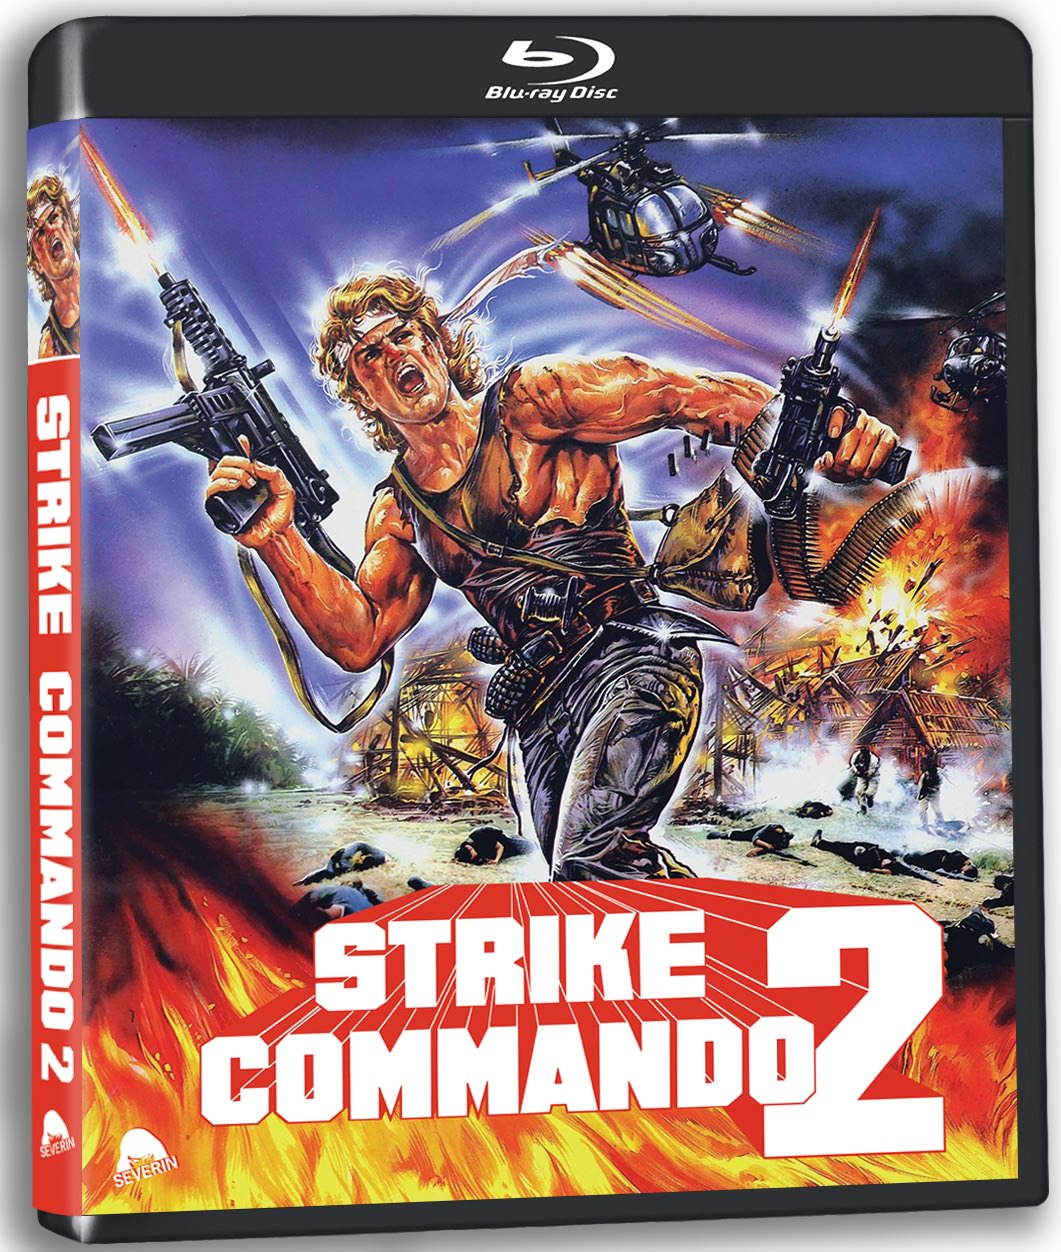 Commando 2 (Full Game) 